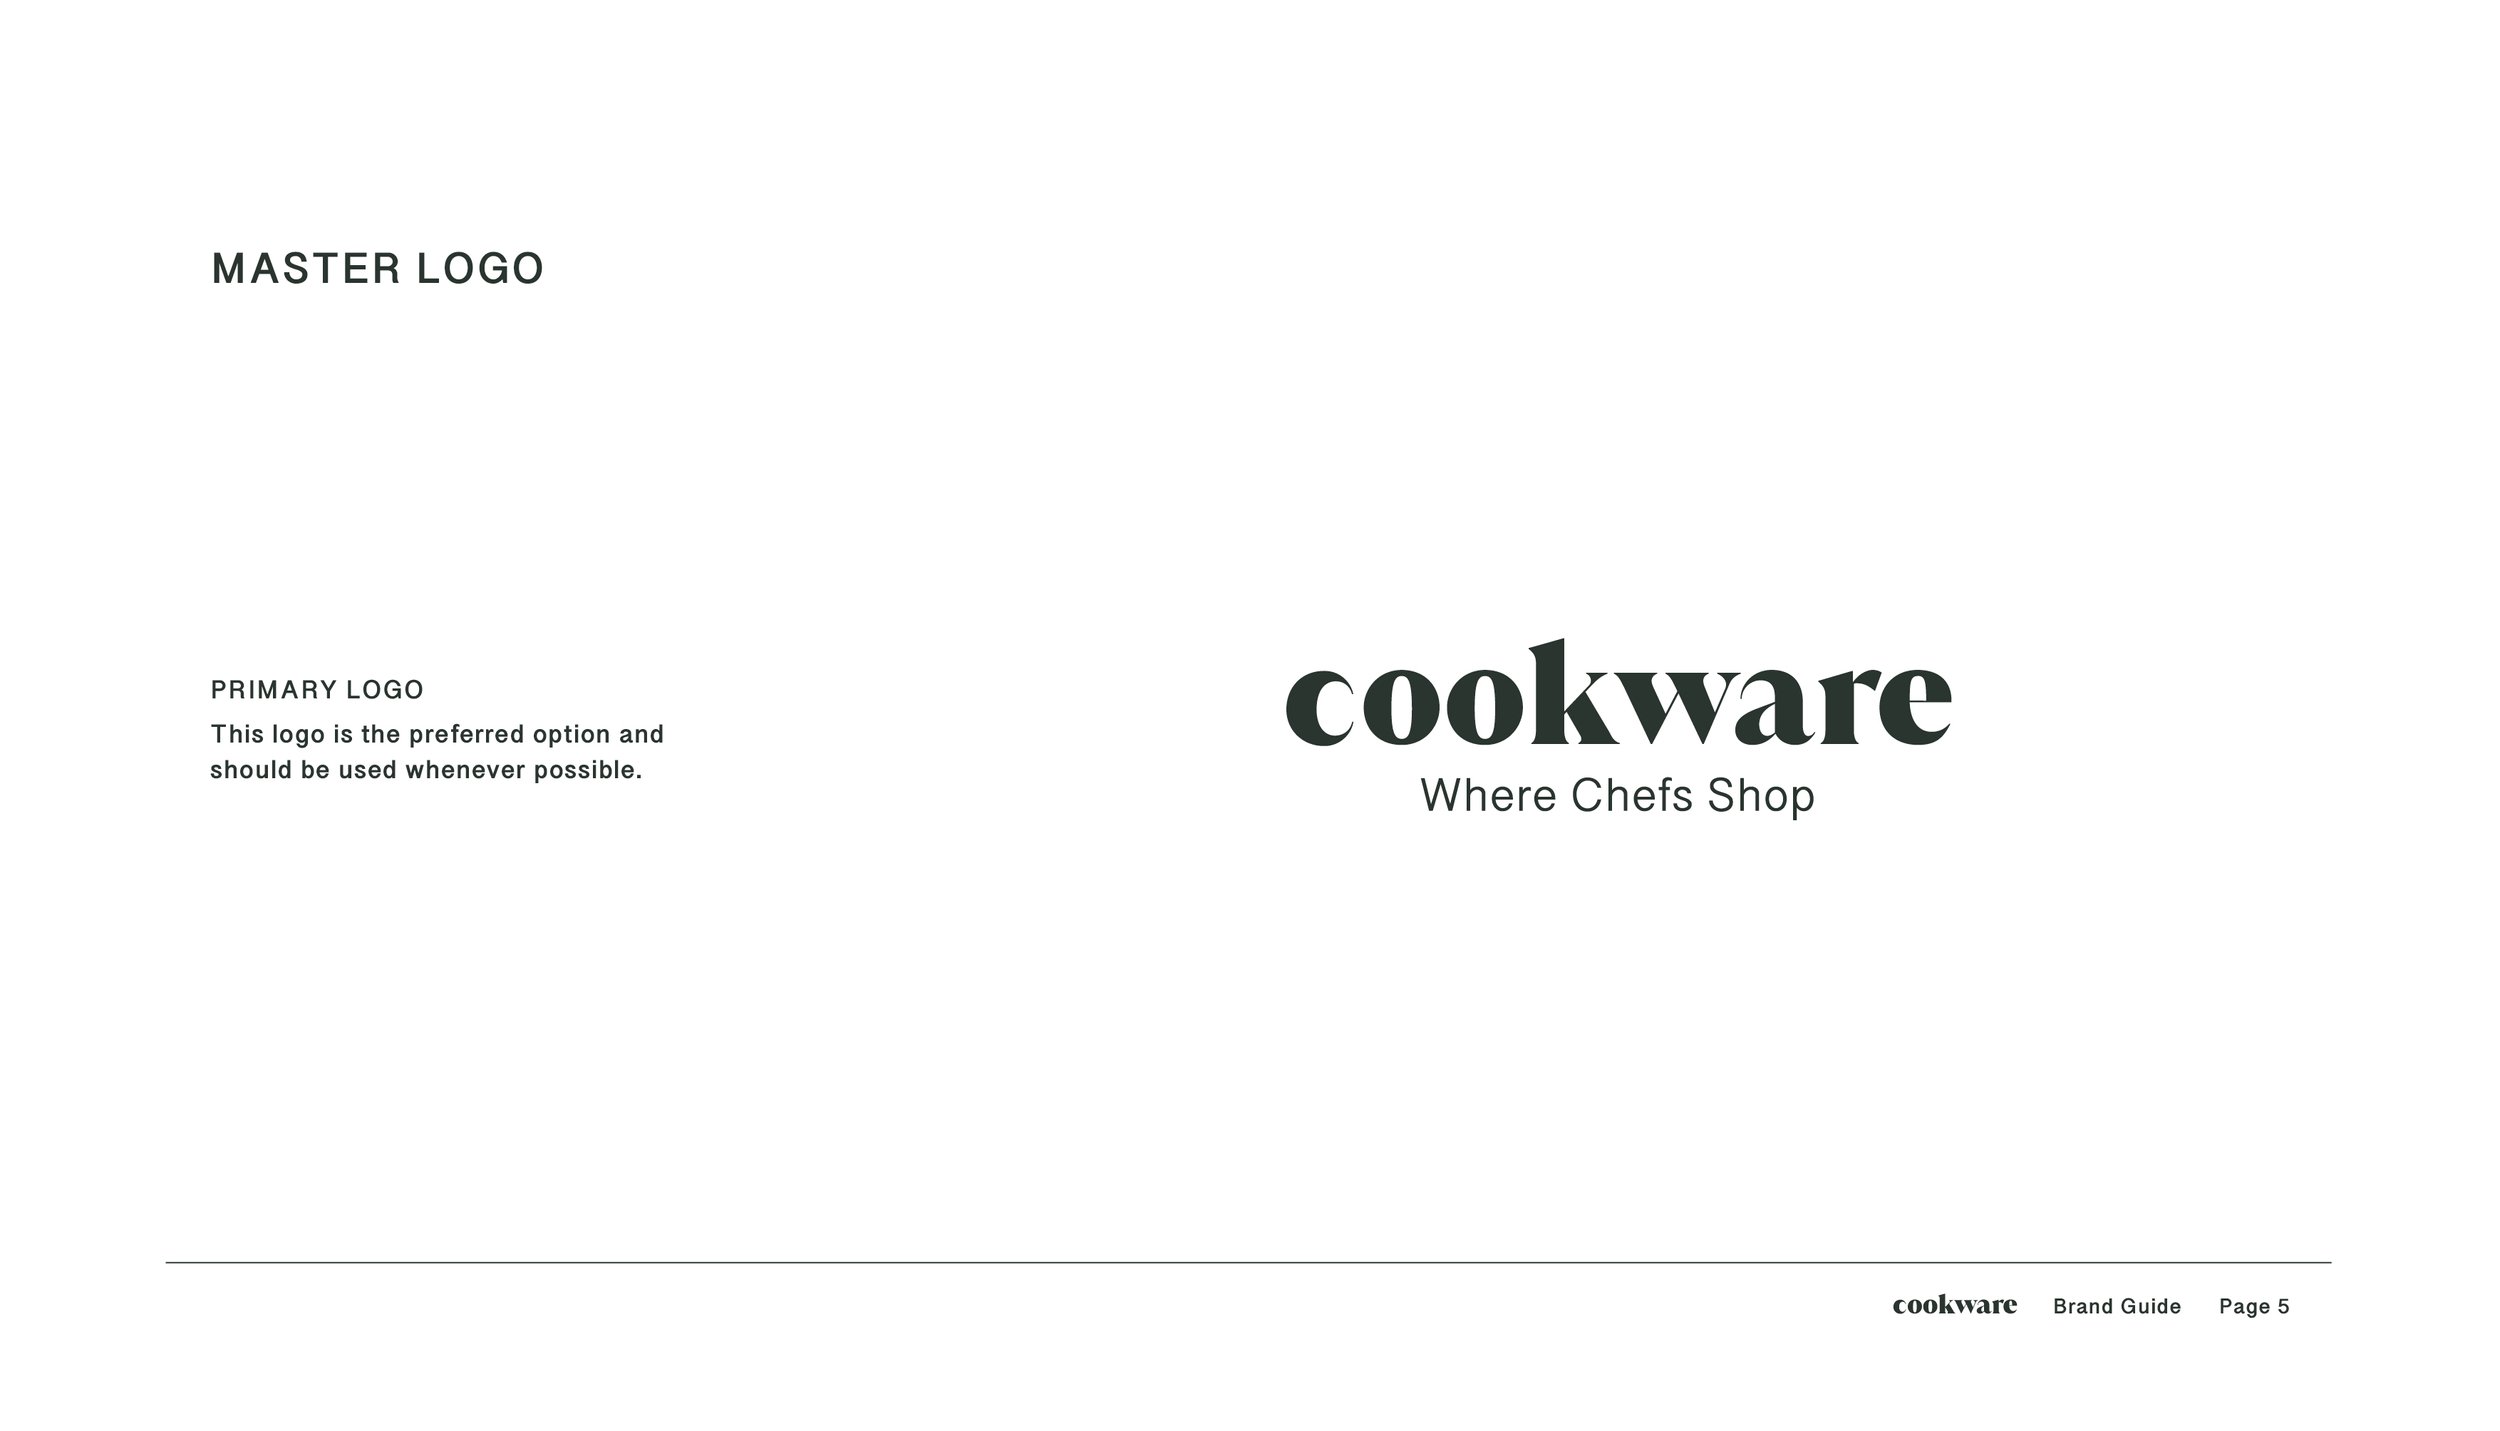 CKW002 - Brand Guide5.jpg